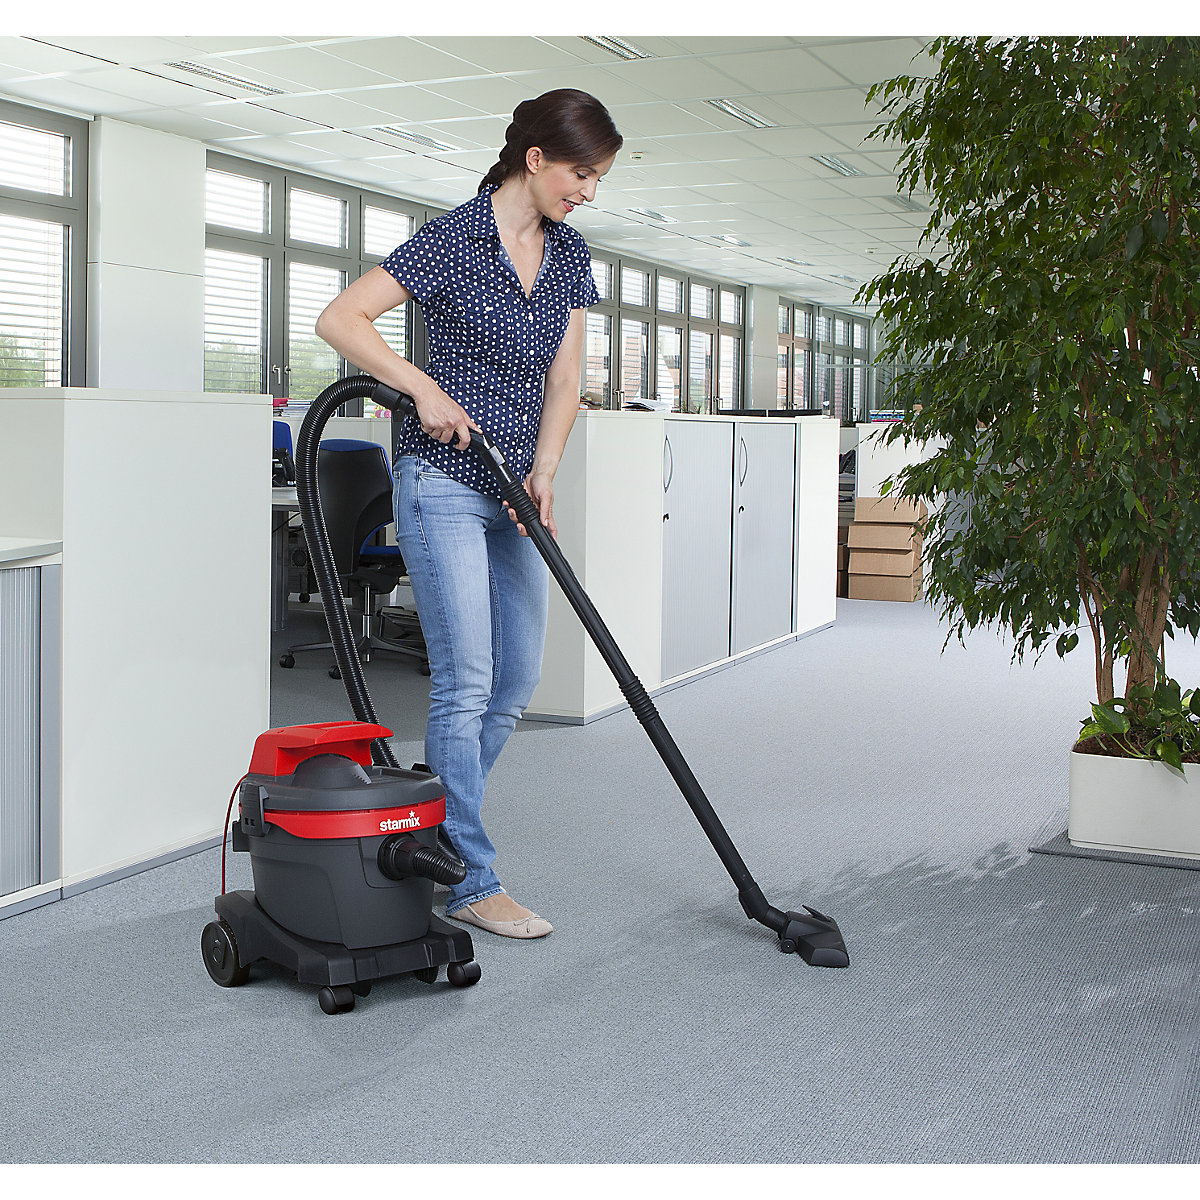 Starmix Ardl 1420 Ehp Floor Vacuum Cleaner Vacuum Cleaner for